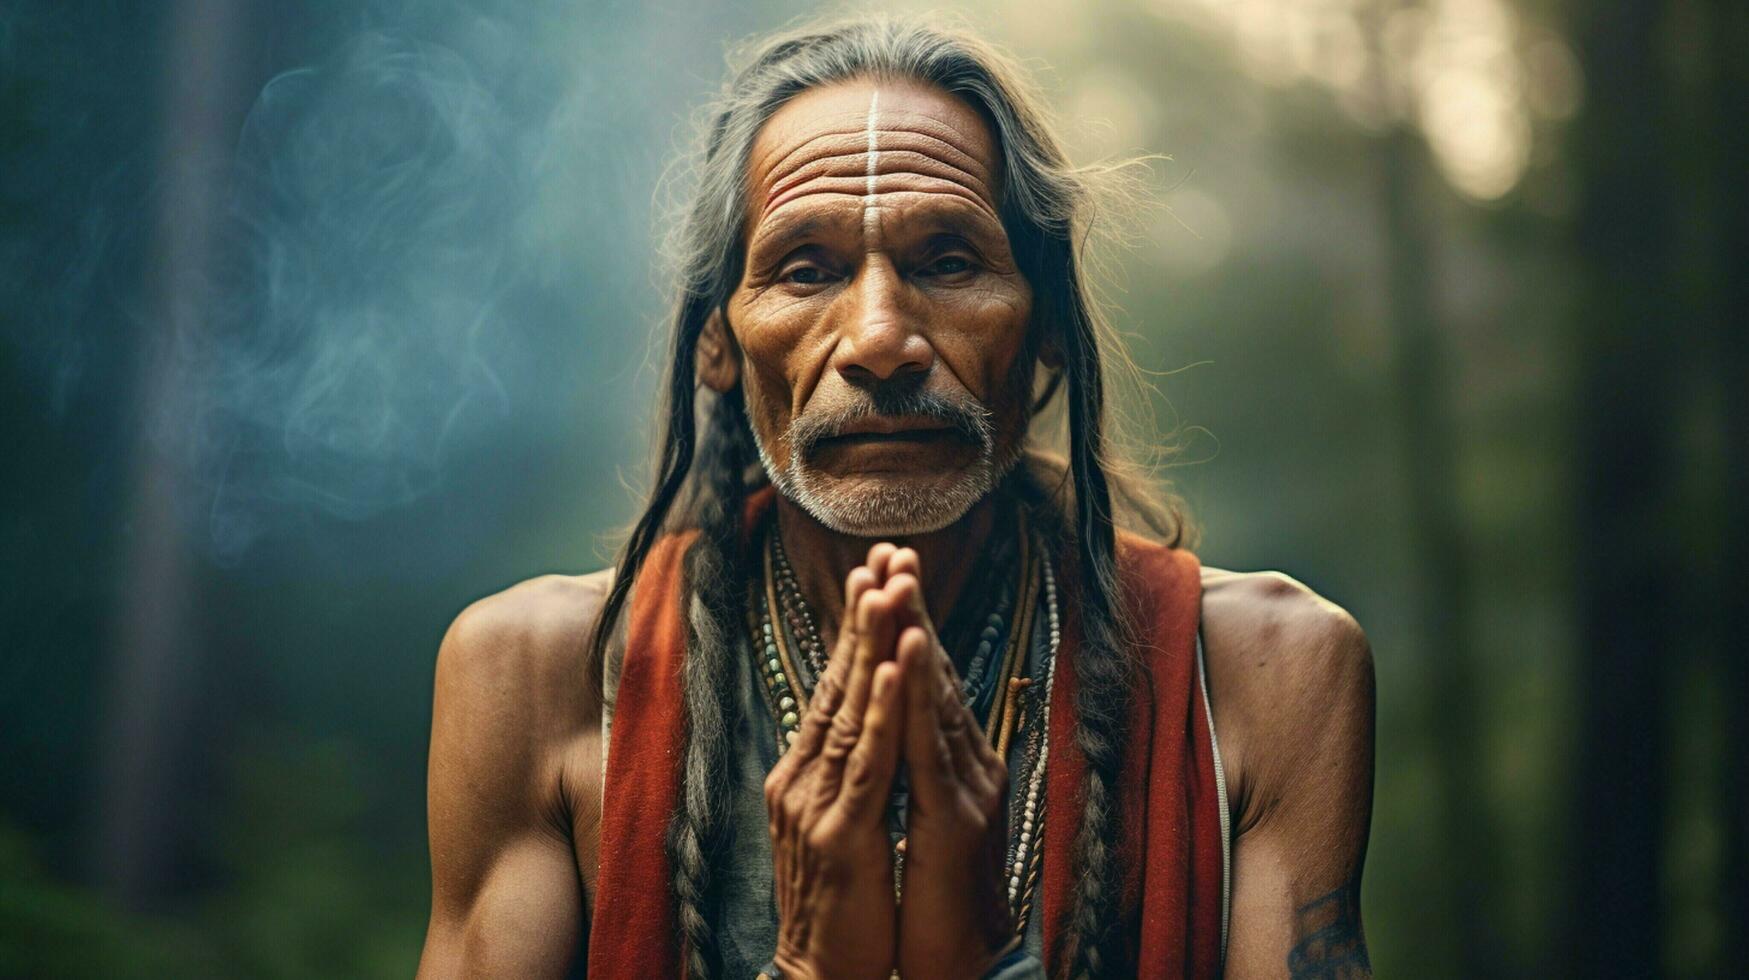 indigenous man praying looking at camera spirituality photo